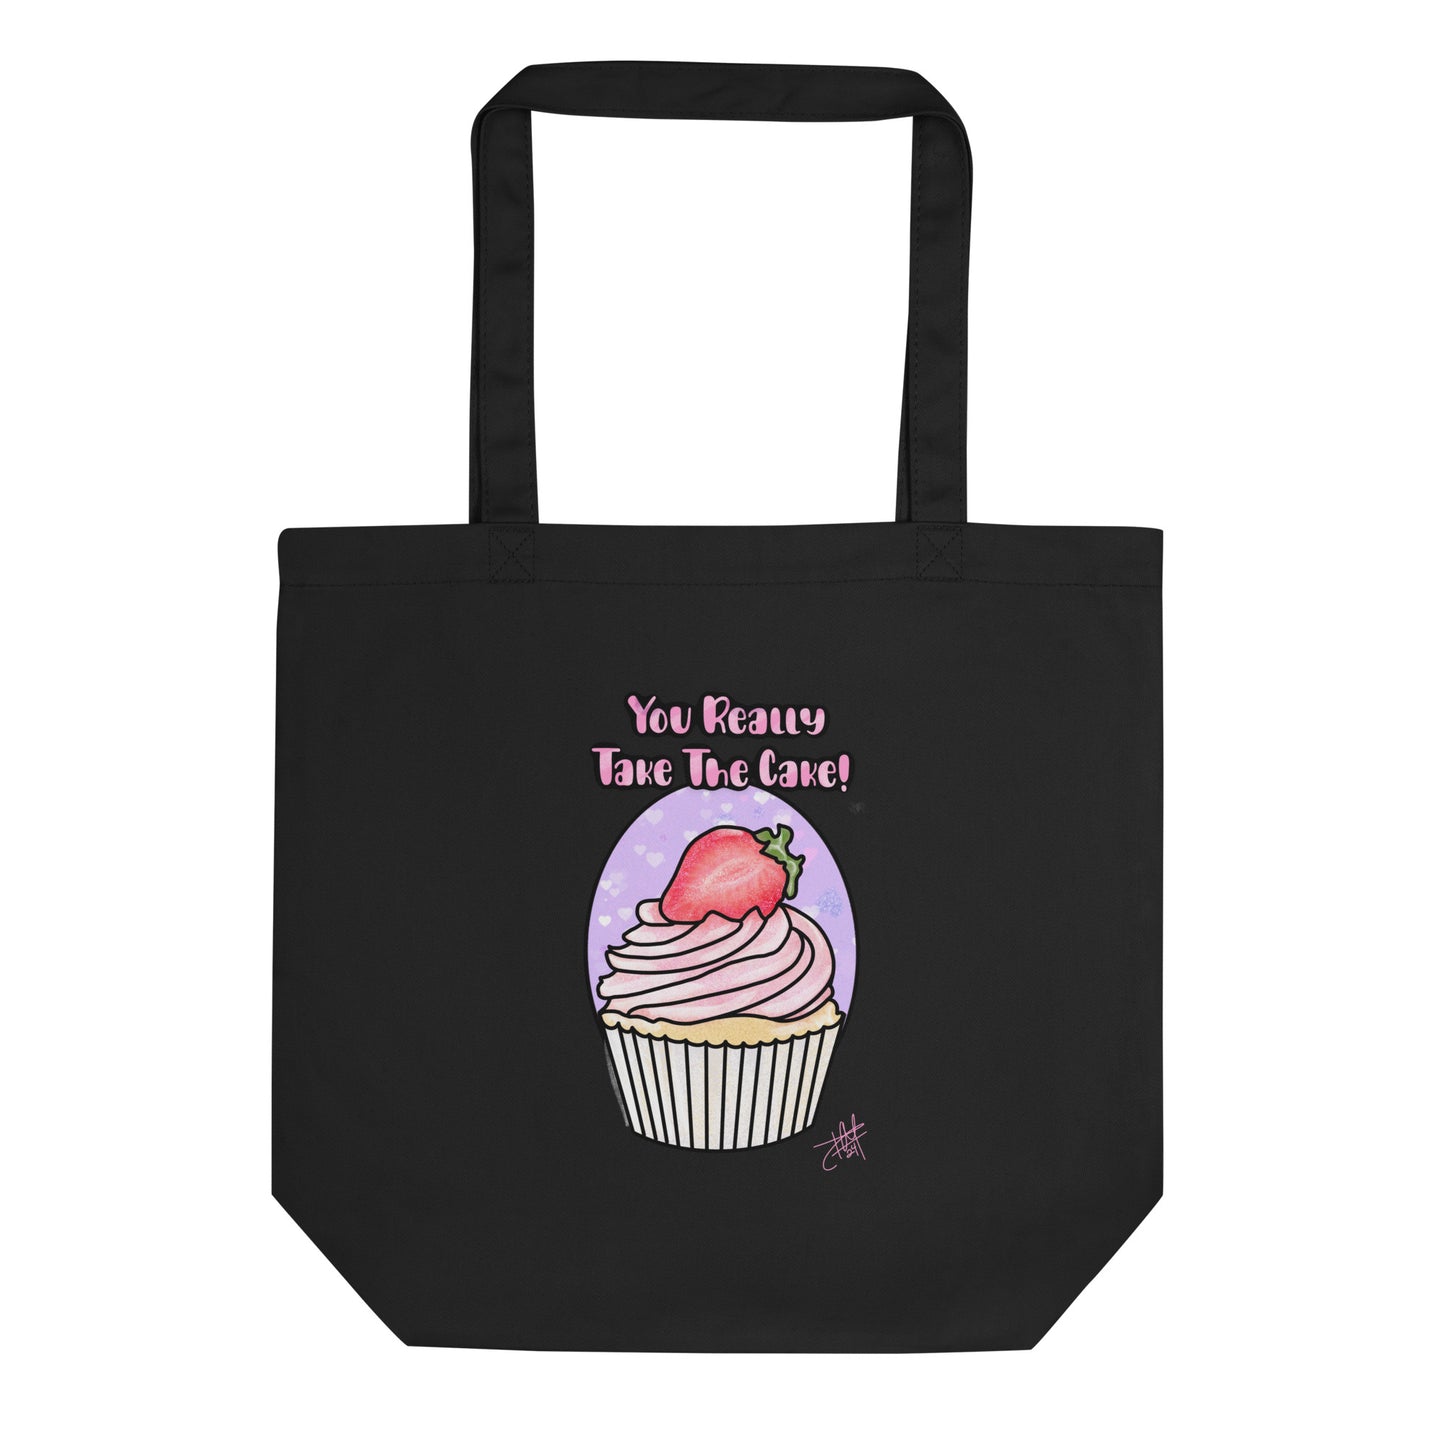 Take The Cake Eco Tote Bag